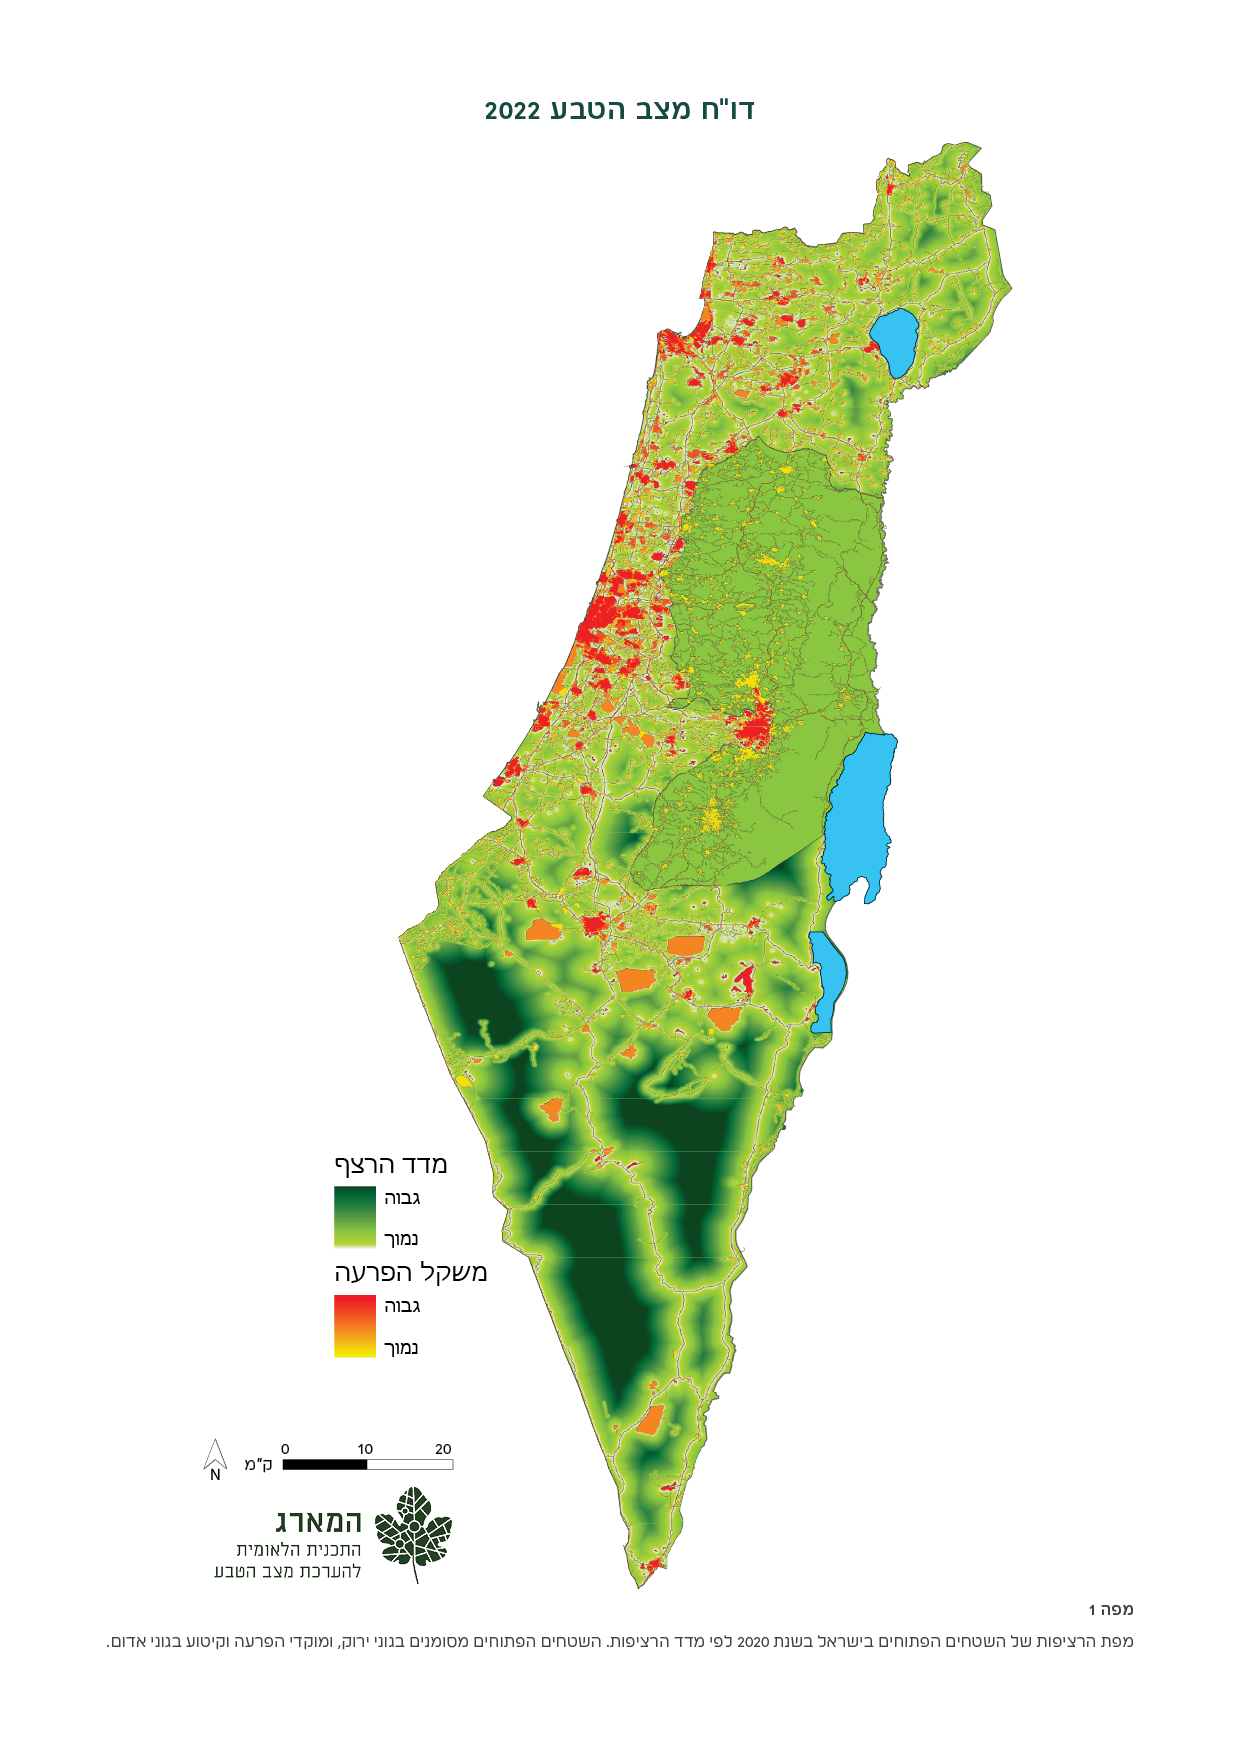 מדד רציפות וקיטוע של השטחים הפתוחים בישראל